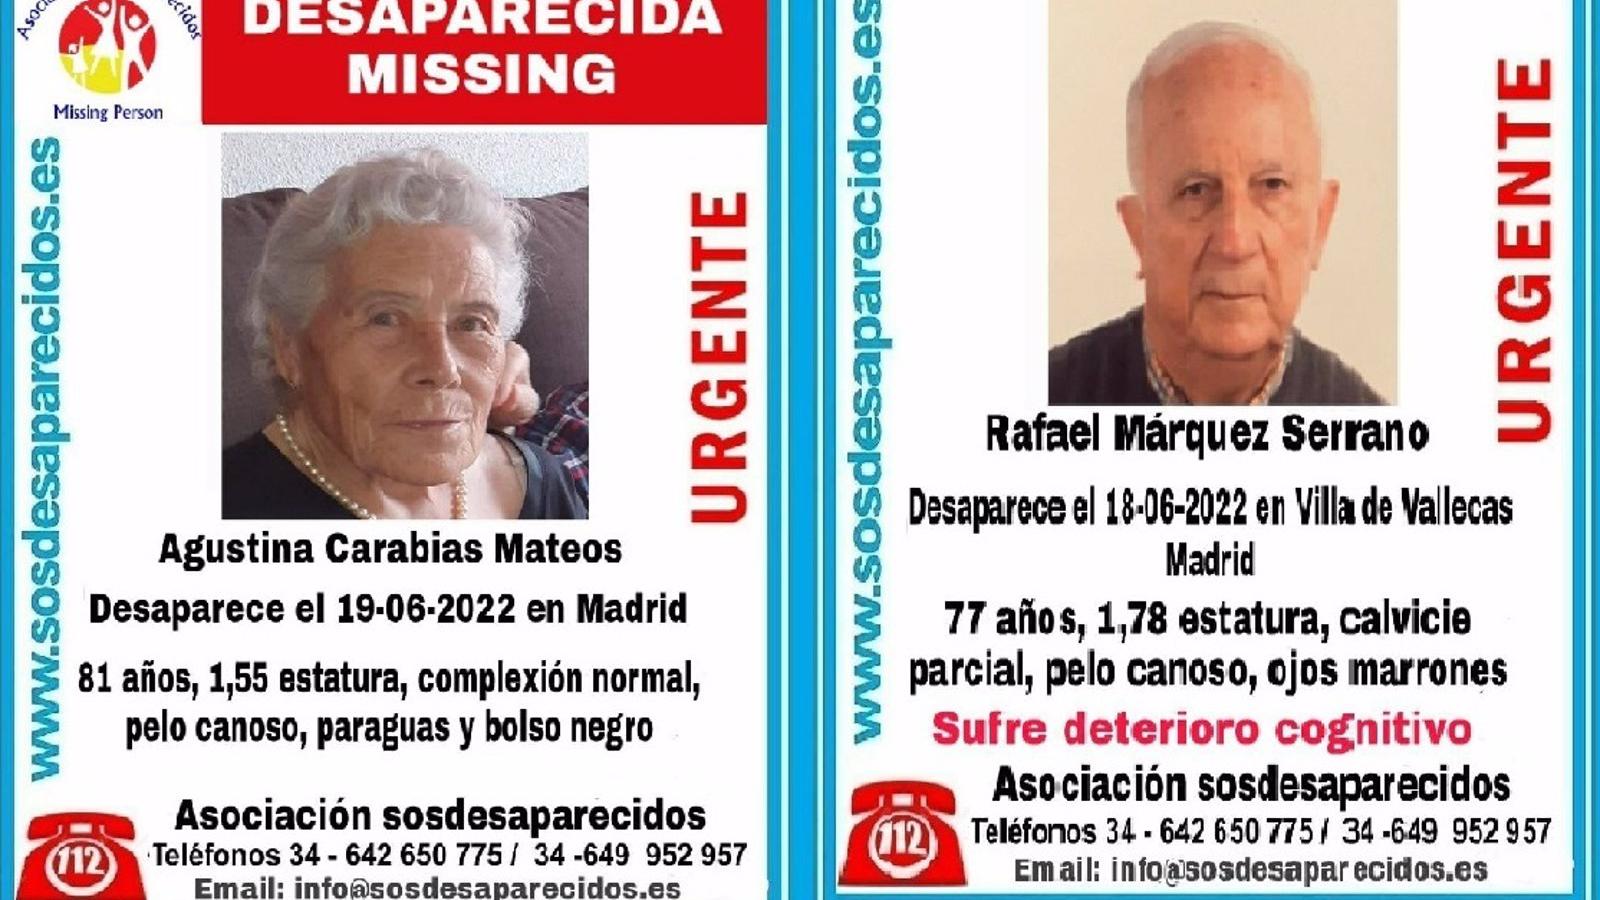  Hallan muertos a los dos ancianos desaparecidos hace unos días en Madrid